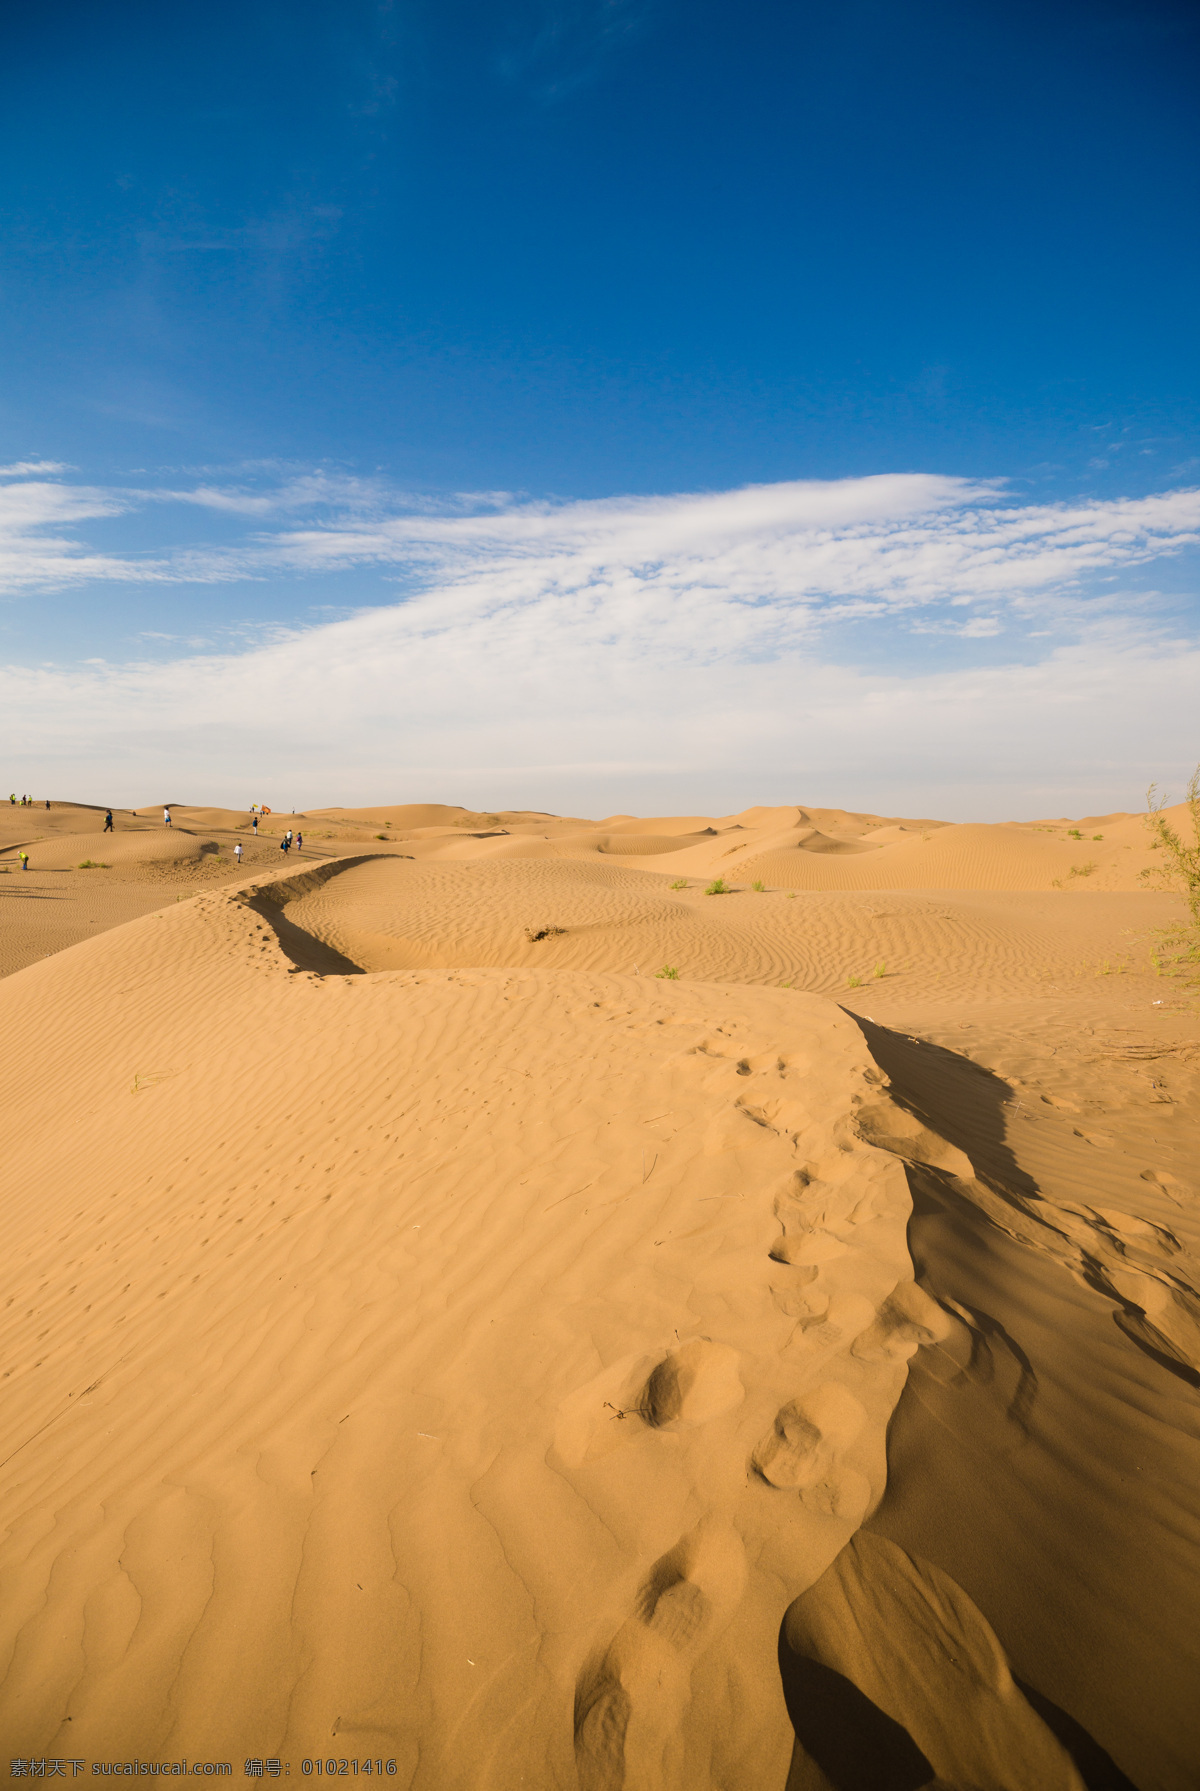 沙漠 黄沙 沙丘 鄂尔多斯沙漠 内蒙古沙漠 沙漠风光 沙漠丽景 库不齐沙漠 响沙湾 沙漠摄影 库布齐沙漠 旅游摄影 国内旅游